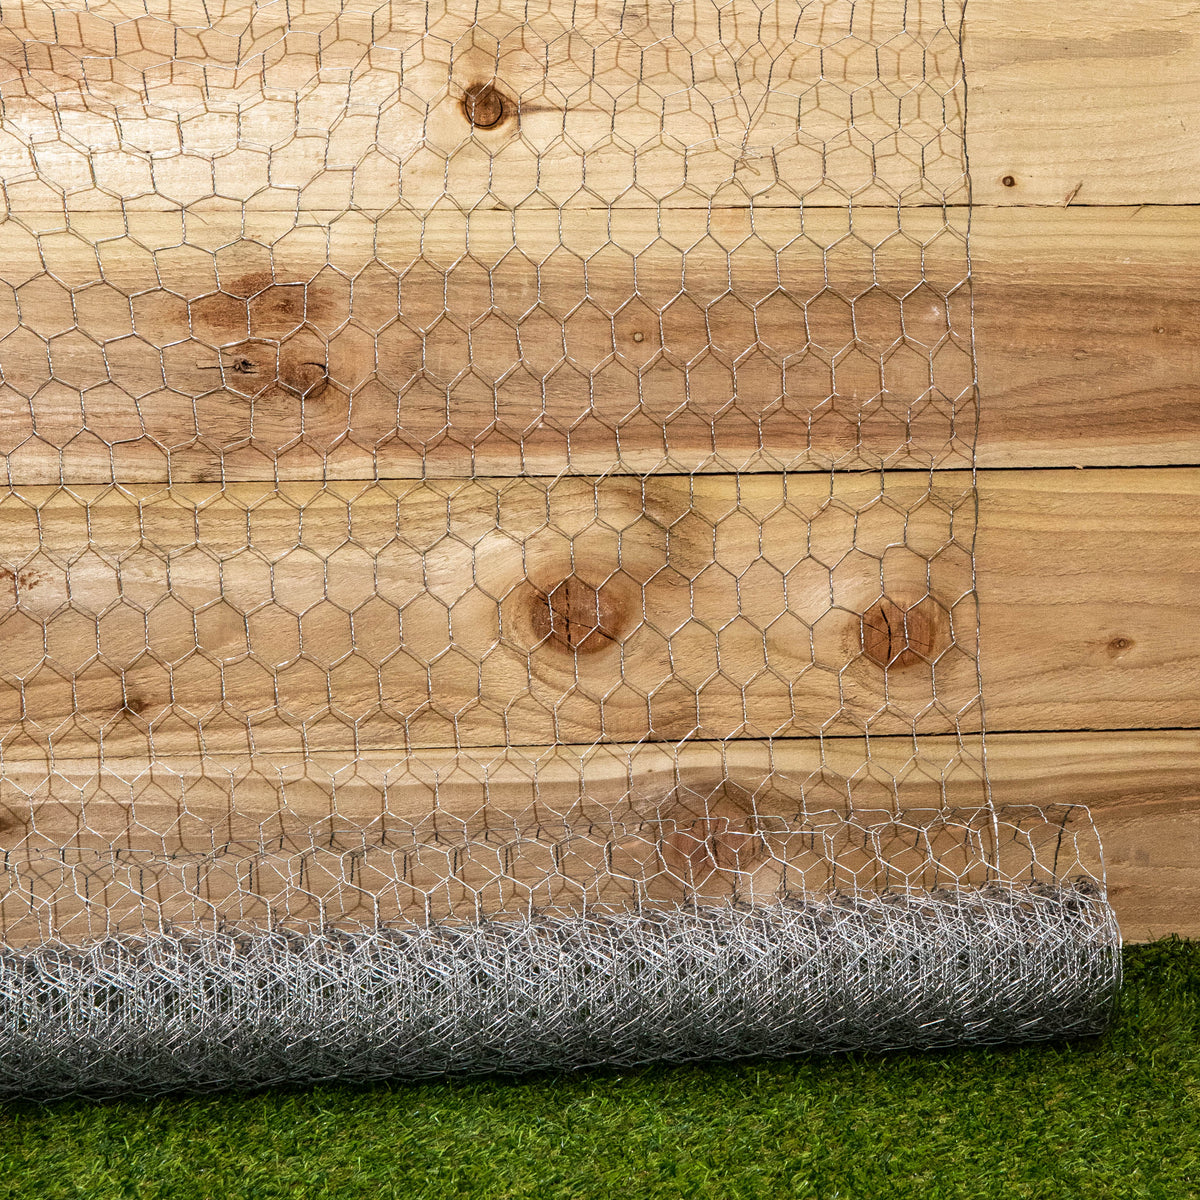 5m x 0.9m x 25mm Galvanised Chicken Wire Garden Netting / Fencing